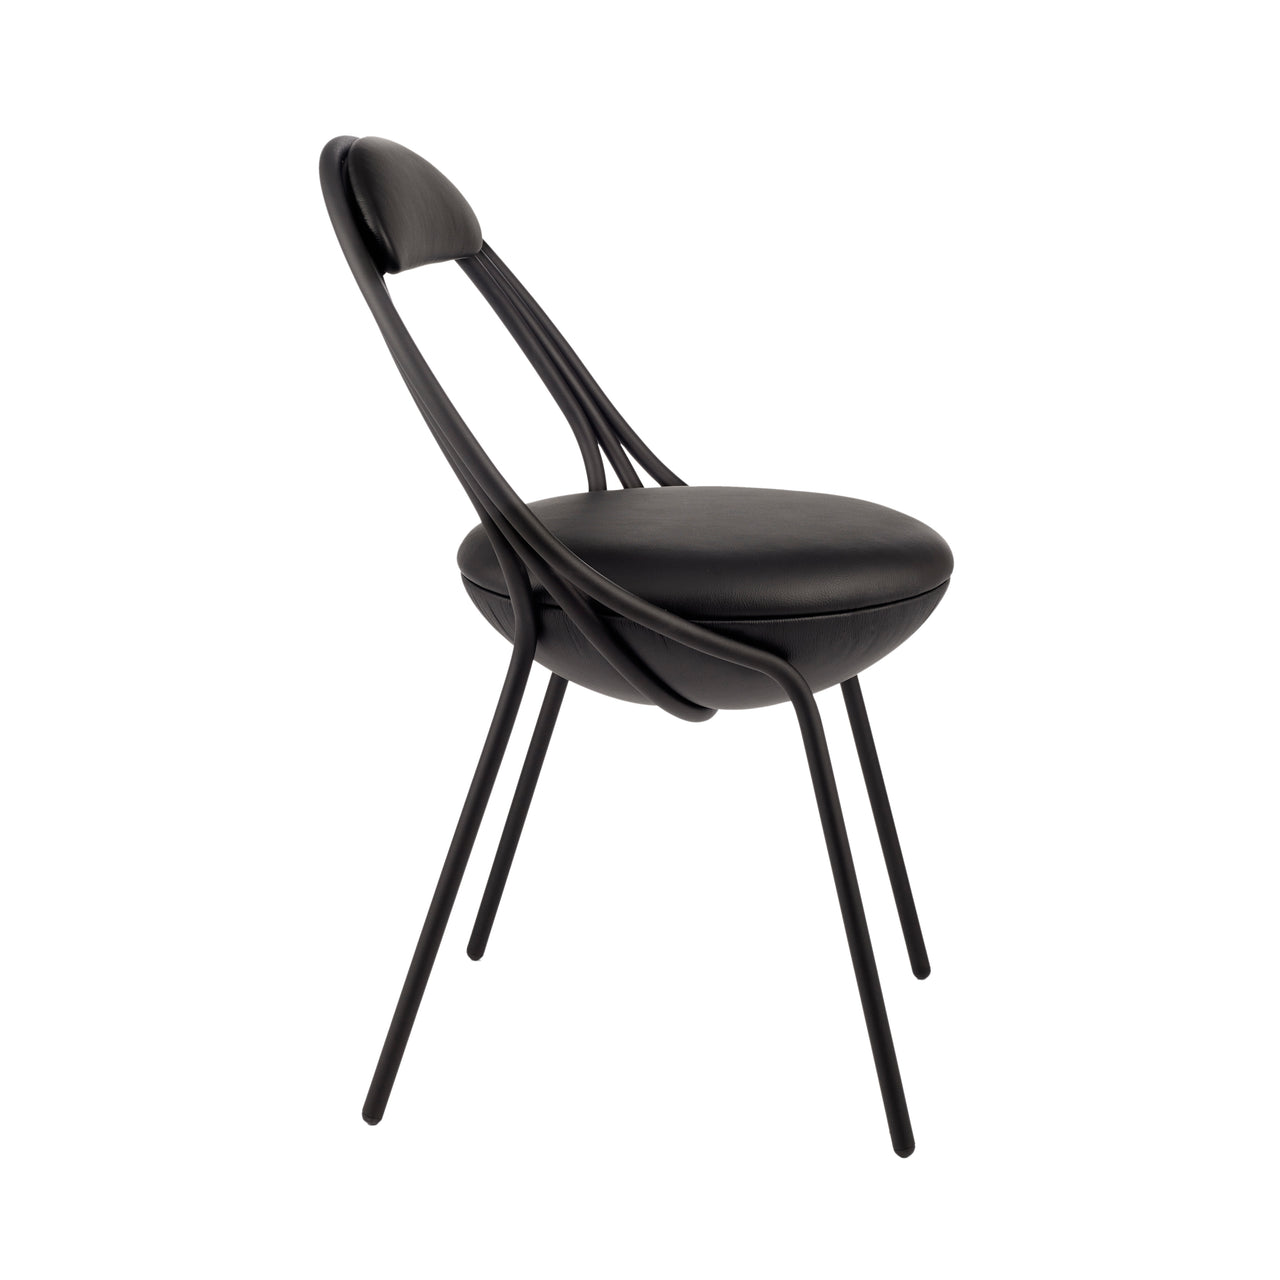 Musico Chair: Matt Black